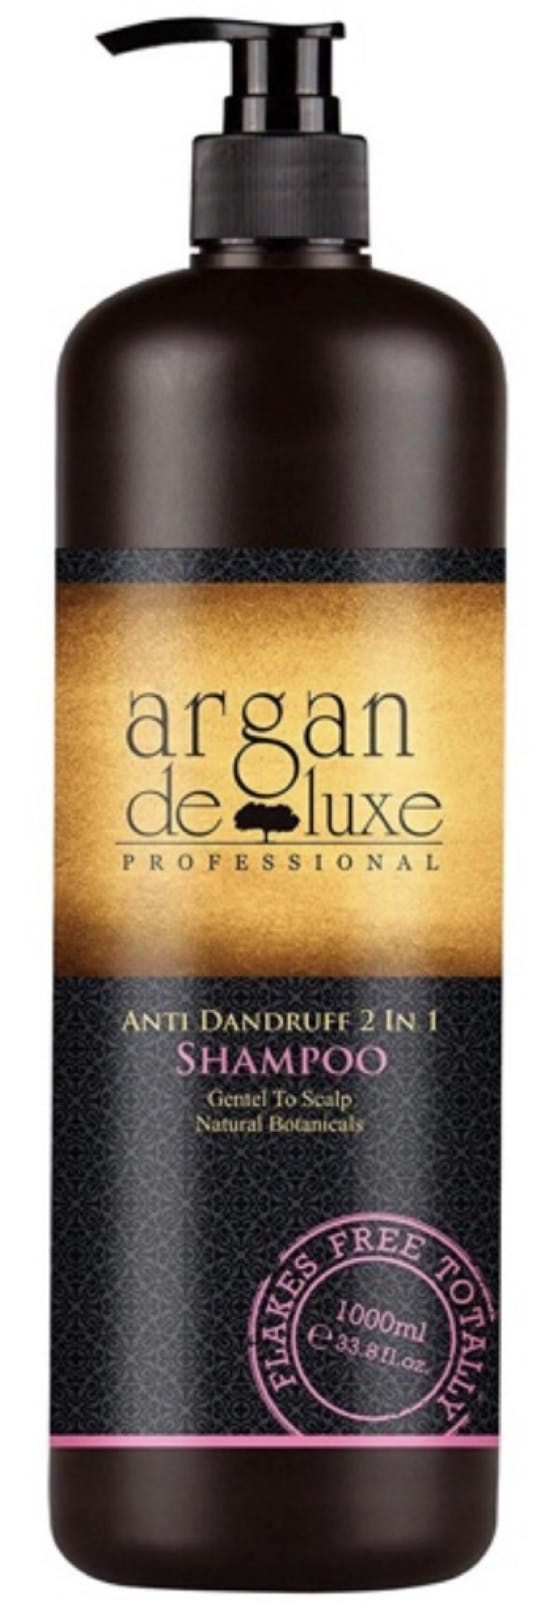 Argan De Luxe Anti-Dandruff 2in1 Shampoo 1000 ml